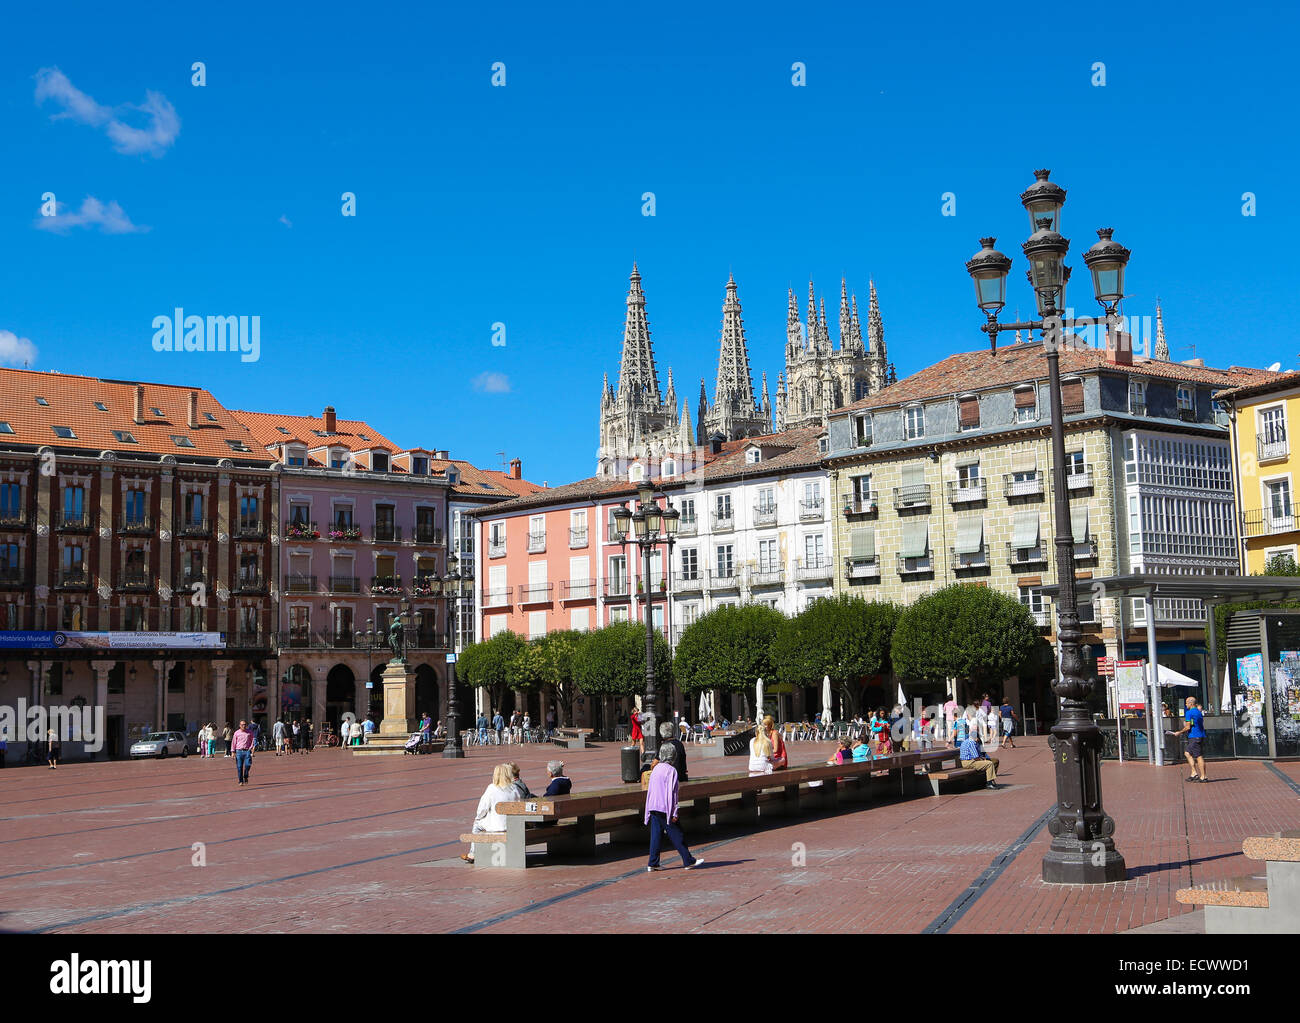 BURGOS, Spagna - 13 agosto 2014: Plaza Mayor e famosa Cattedrale gotica di Burgos, Castille, Spagna. Foto Stock